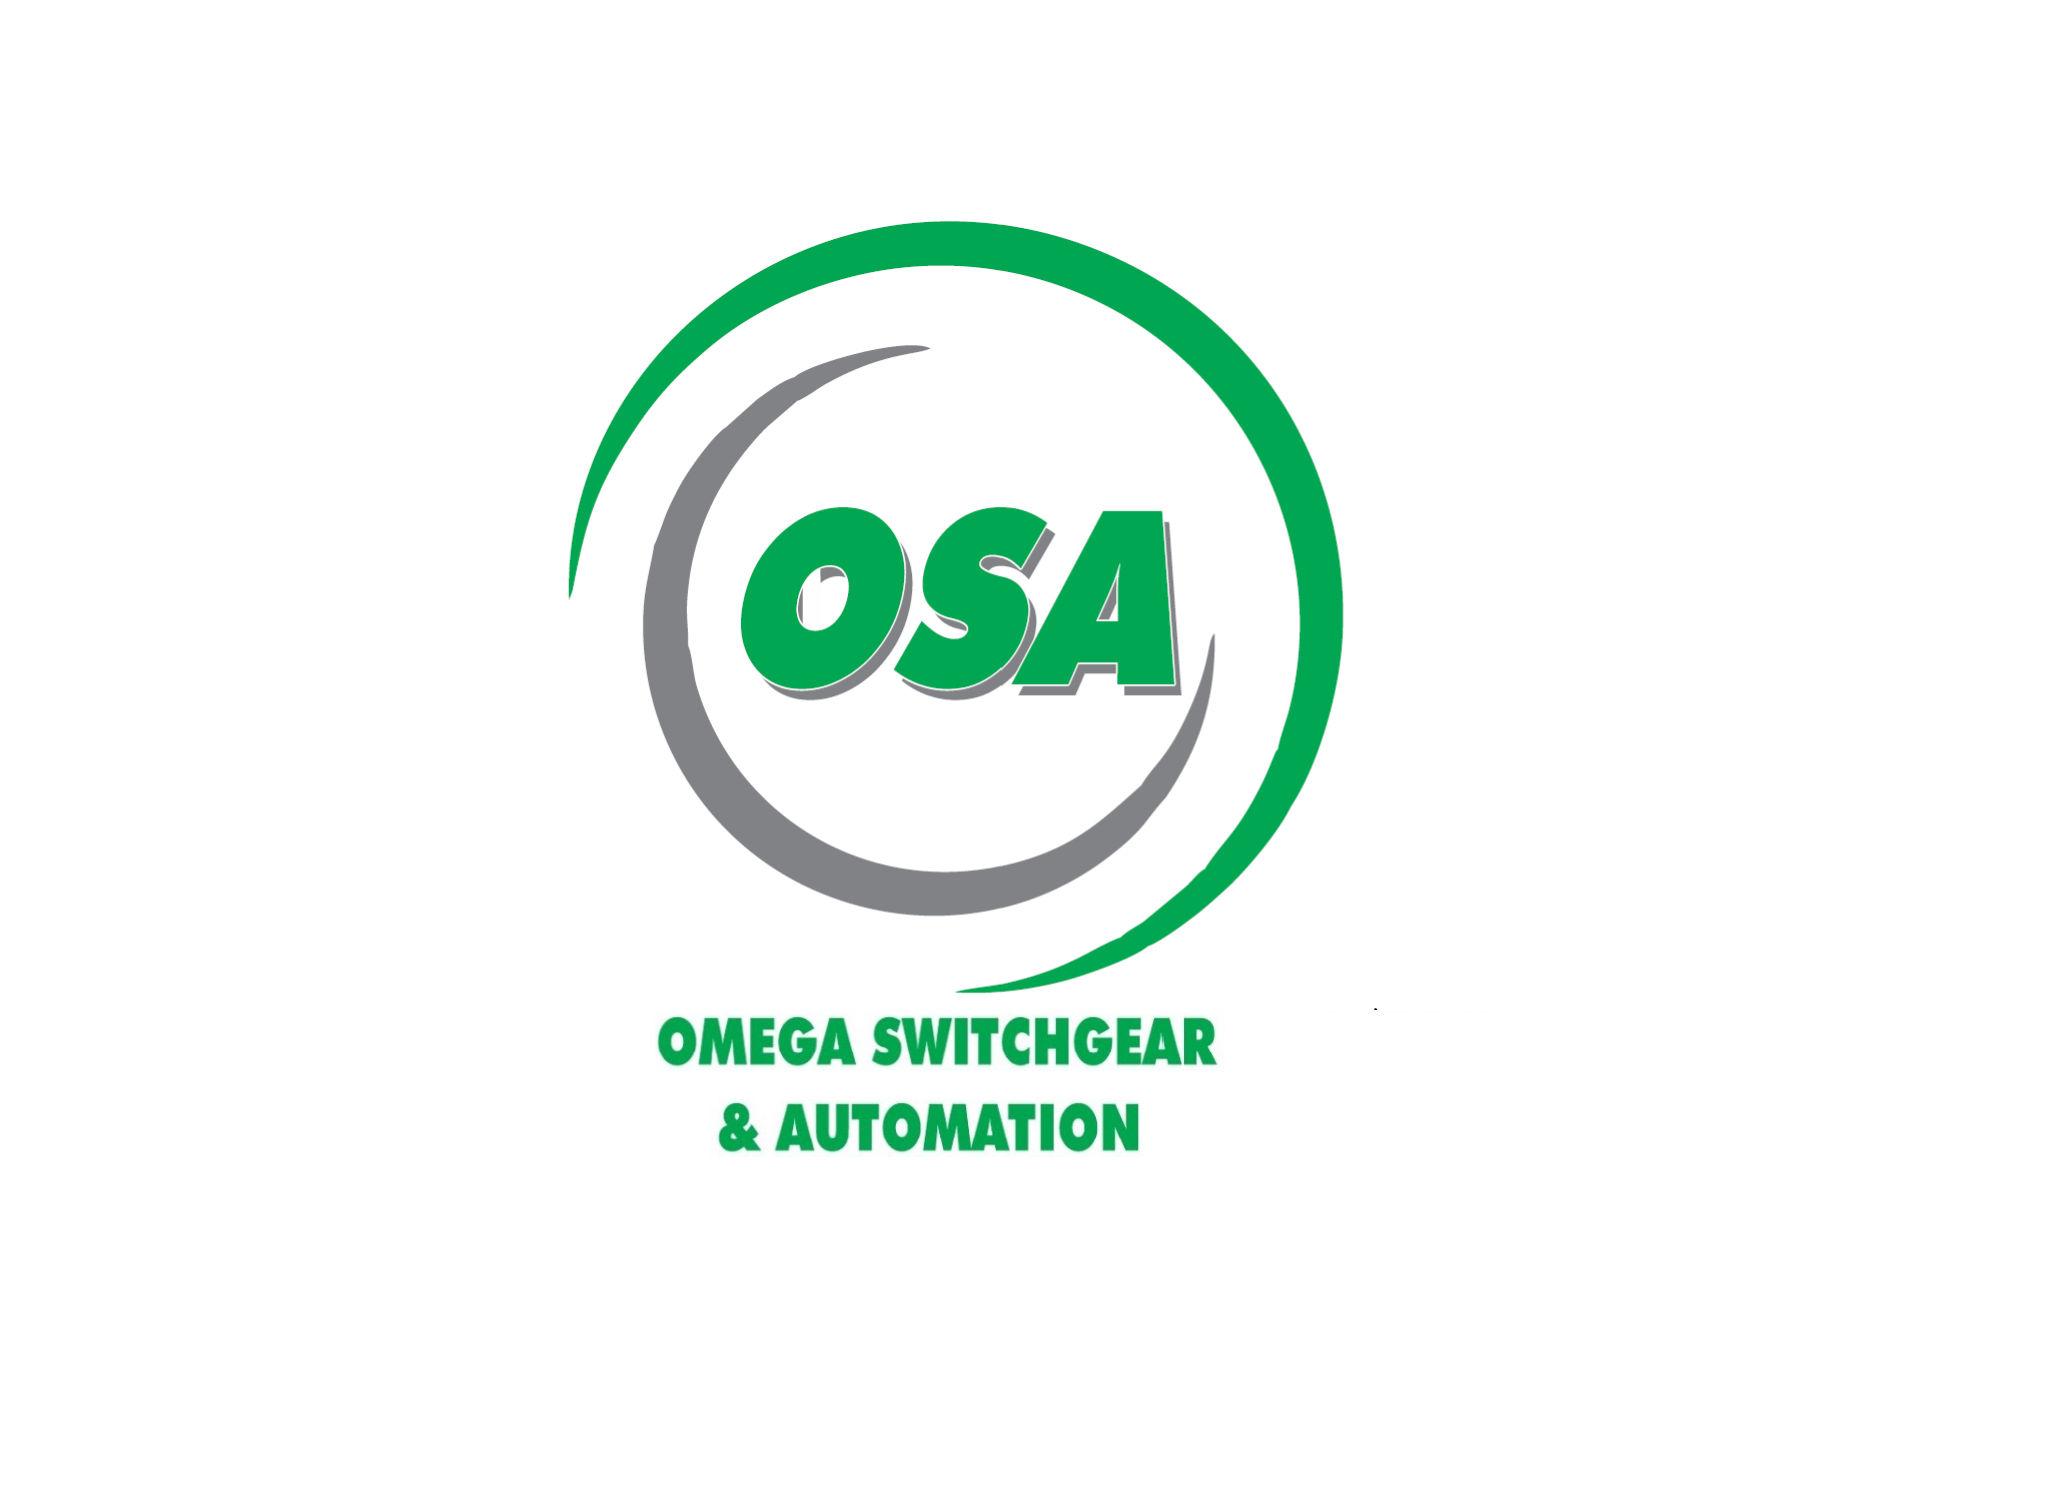 Omega Switchgear & Automation